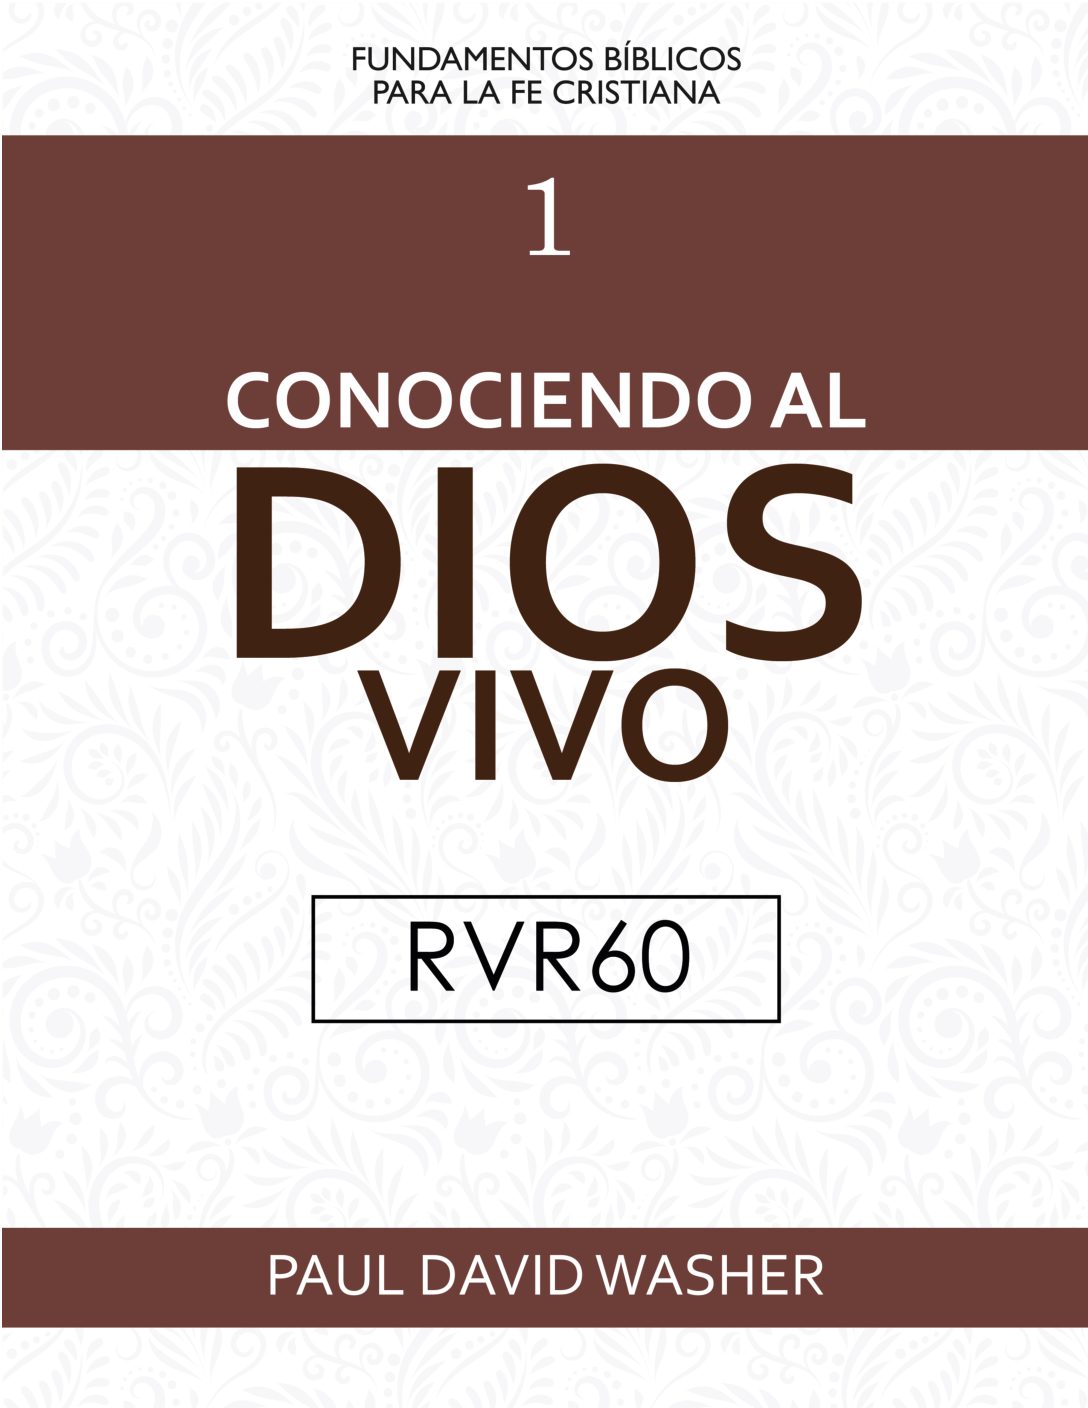 Digital_HeartCry_Conociendo al Dios Vivo_RVR60 (1)